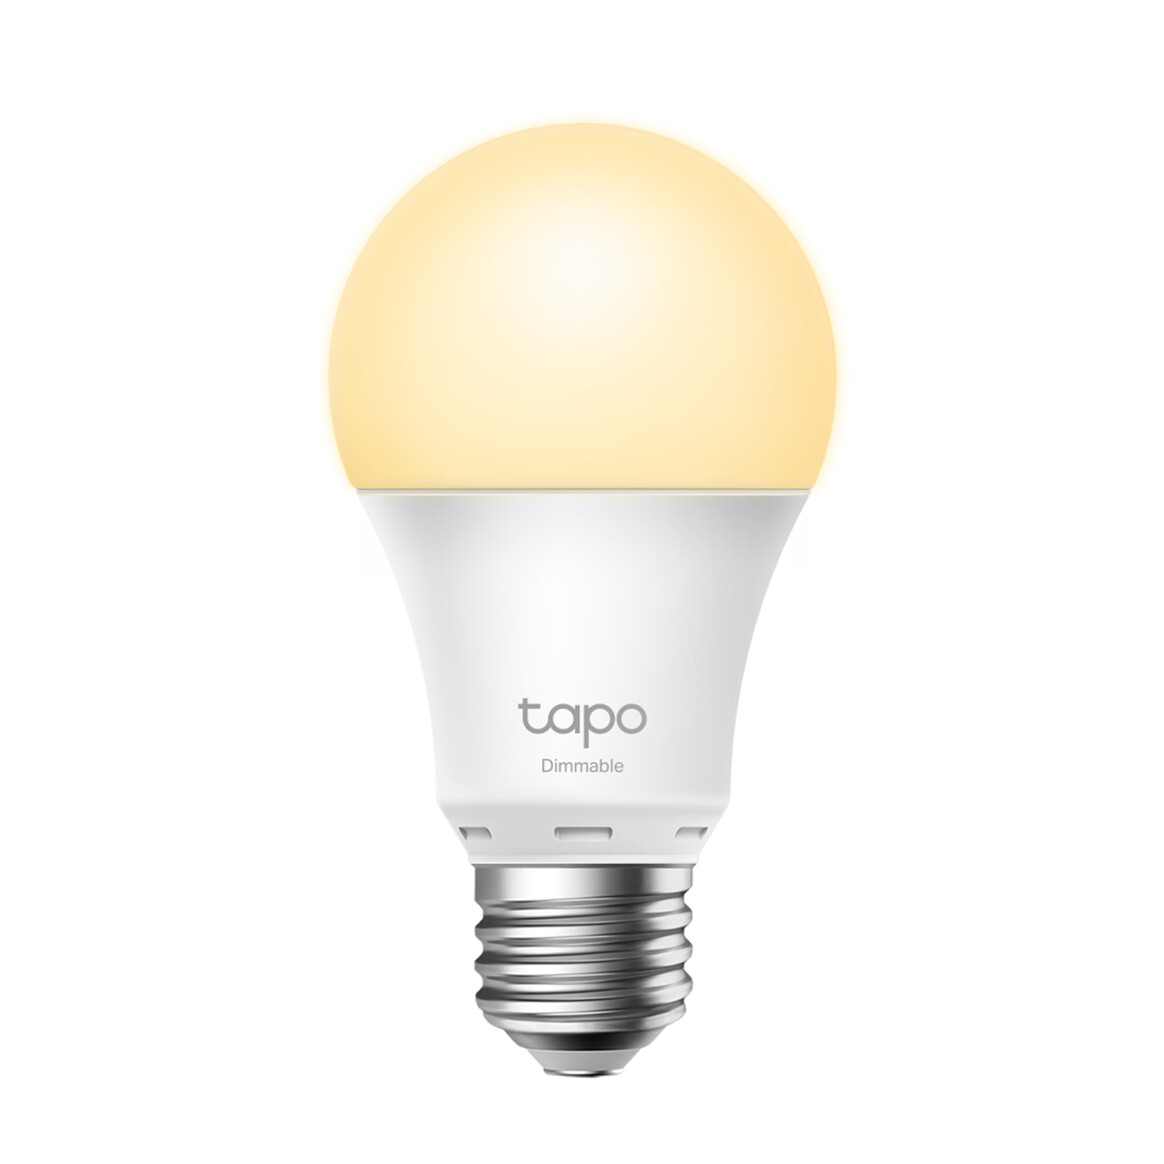 <h1>Tapo L510E, Smart Wi-Fi Light Bulb</h1>